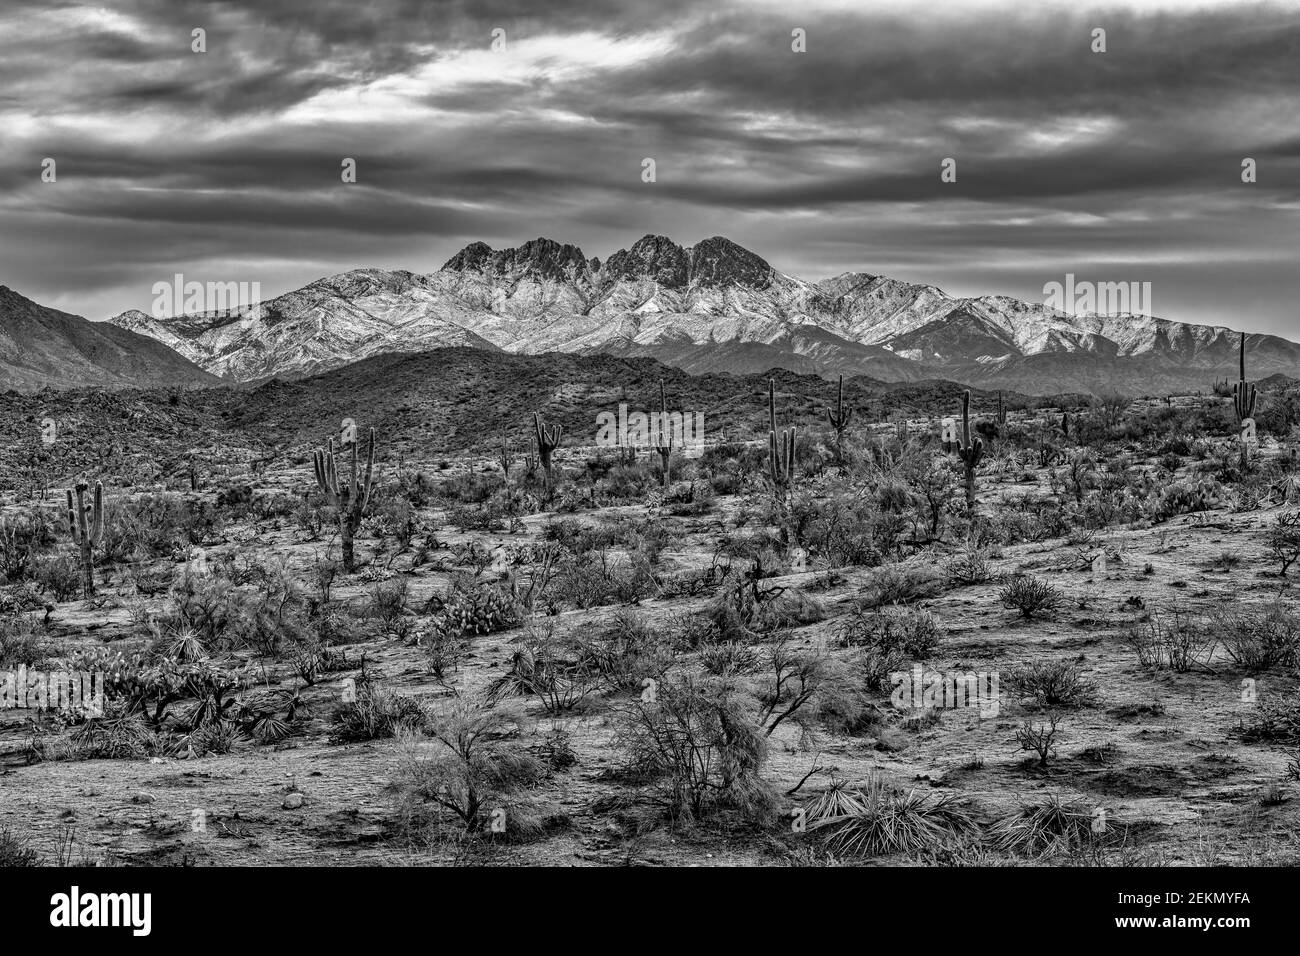 Vue d'hiver de la cicatrice de feu de Bush et de la nature de four Peaks dans la forêt nationale de Tonto à environ 45 miles au nord-nord-est de Phoenix, Arizo Banque D'Images